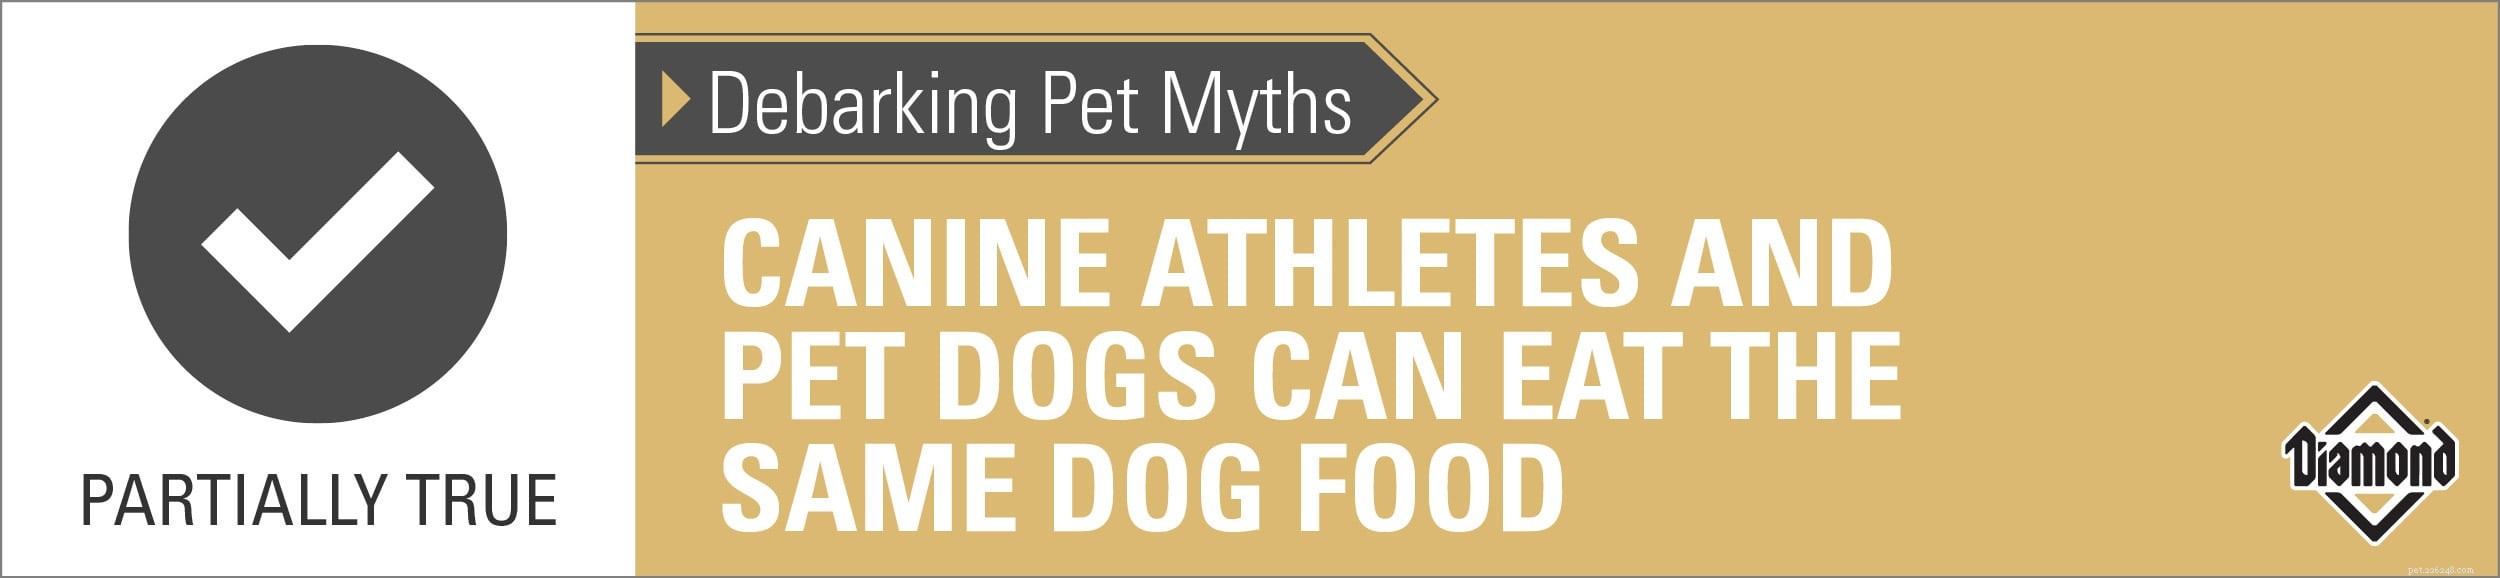 Décorer les mythes des animaux de compagnie :les athlètes canins et les chiens de compagnie peuvent manger la même nourriture pour chiens